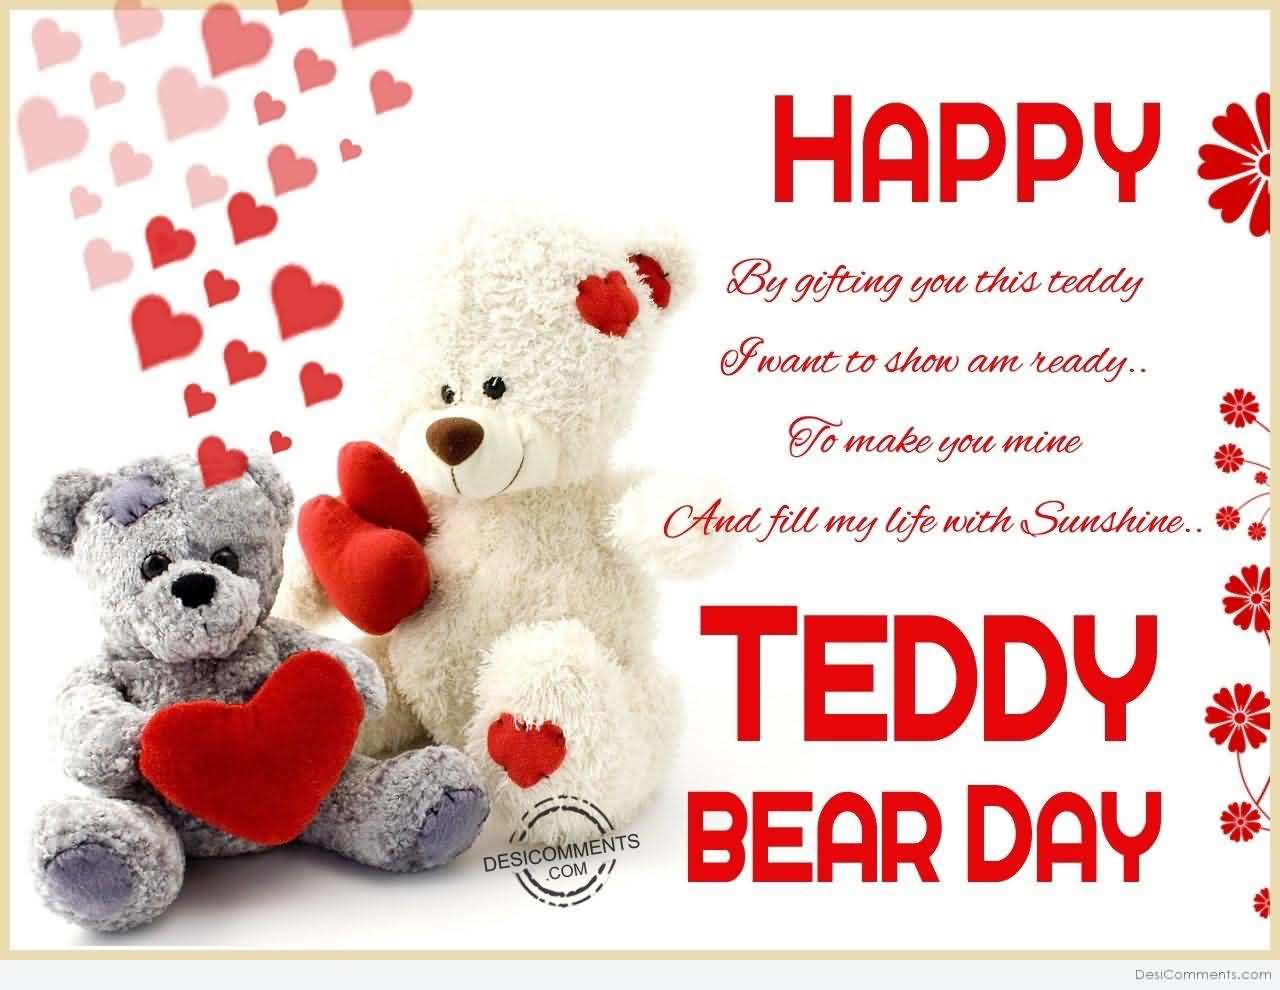 Happy teddy bear day beatiful greeting card